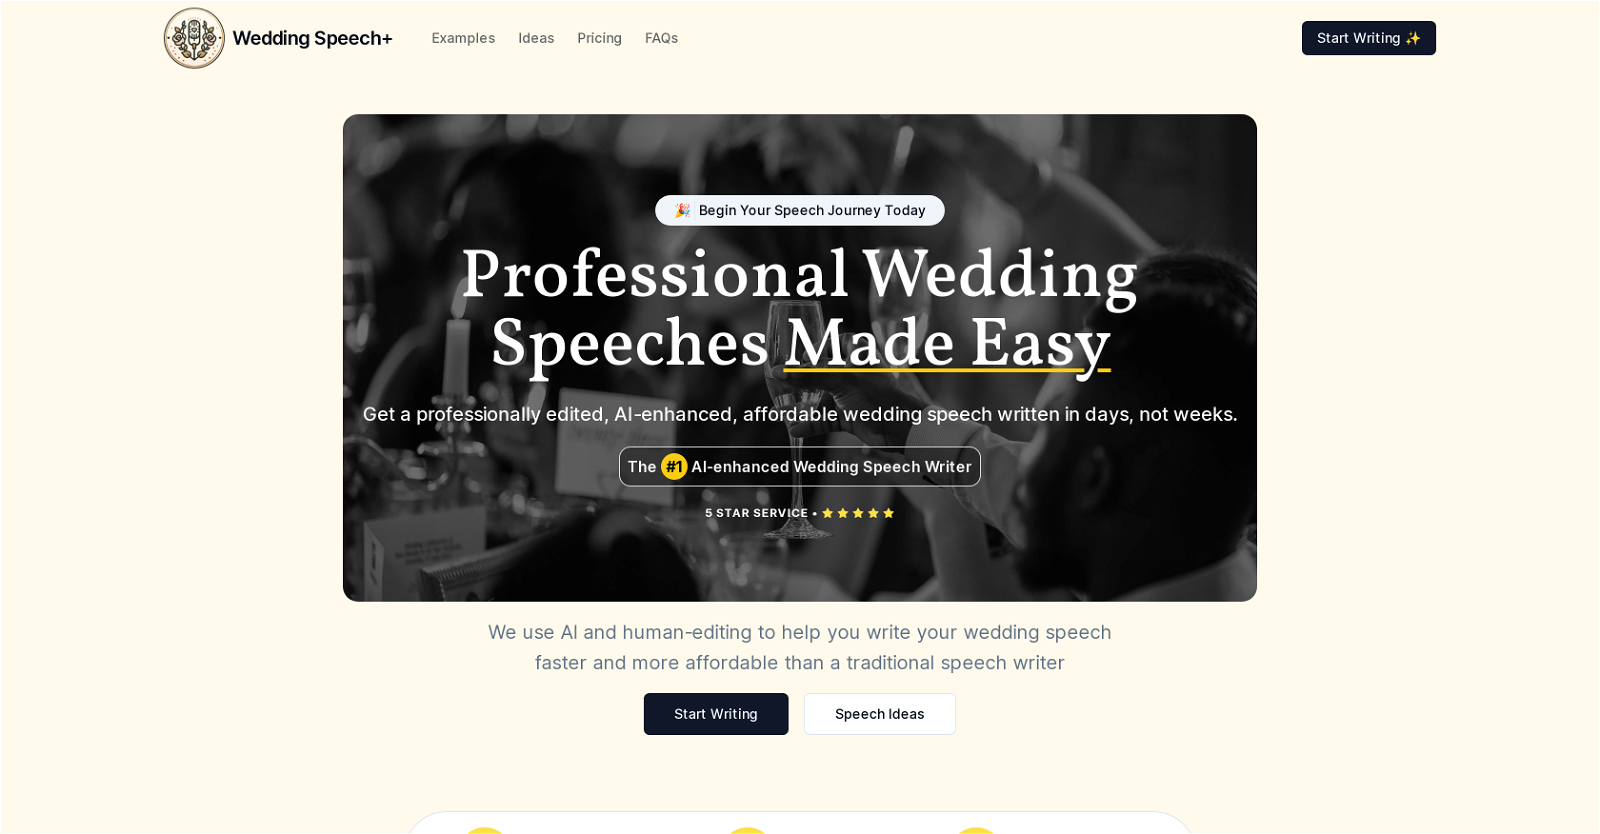 Wedding Speech website